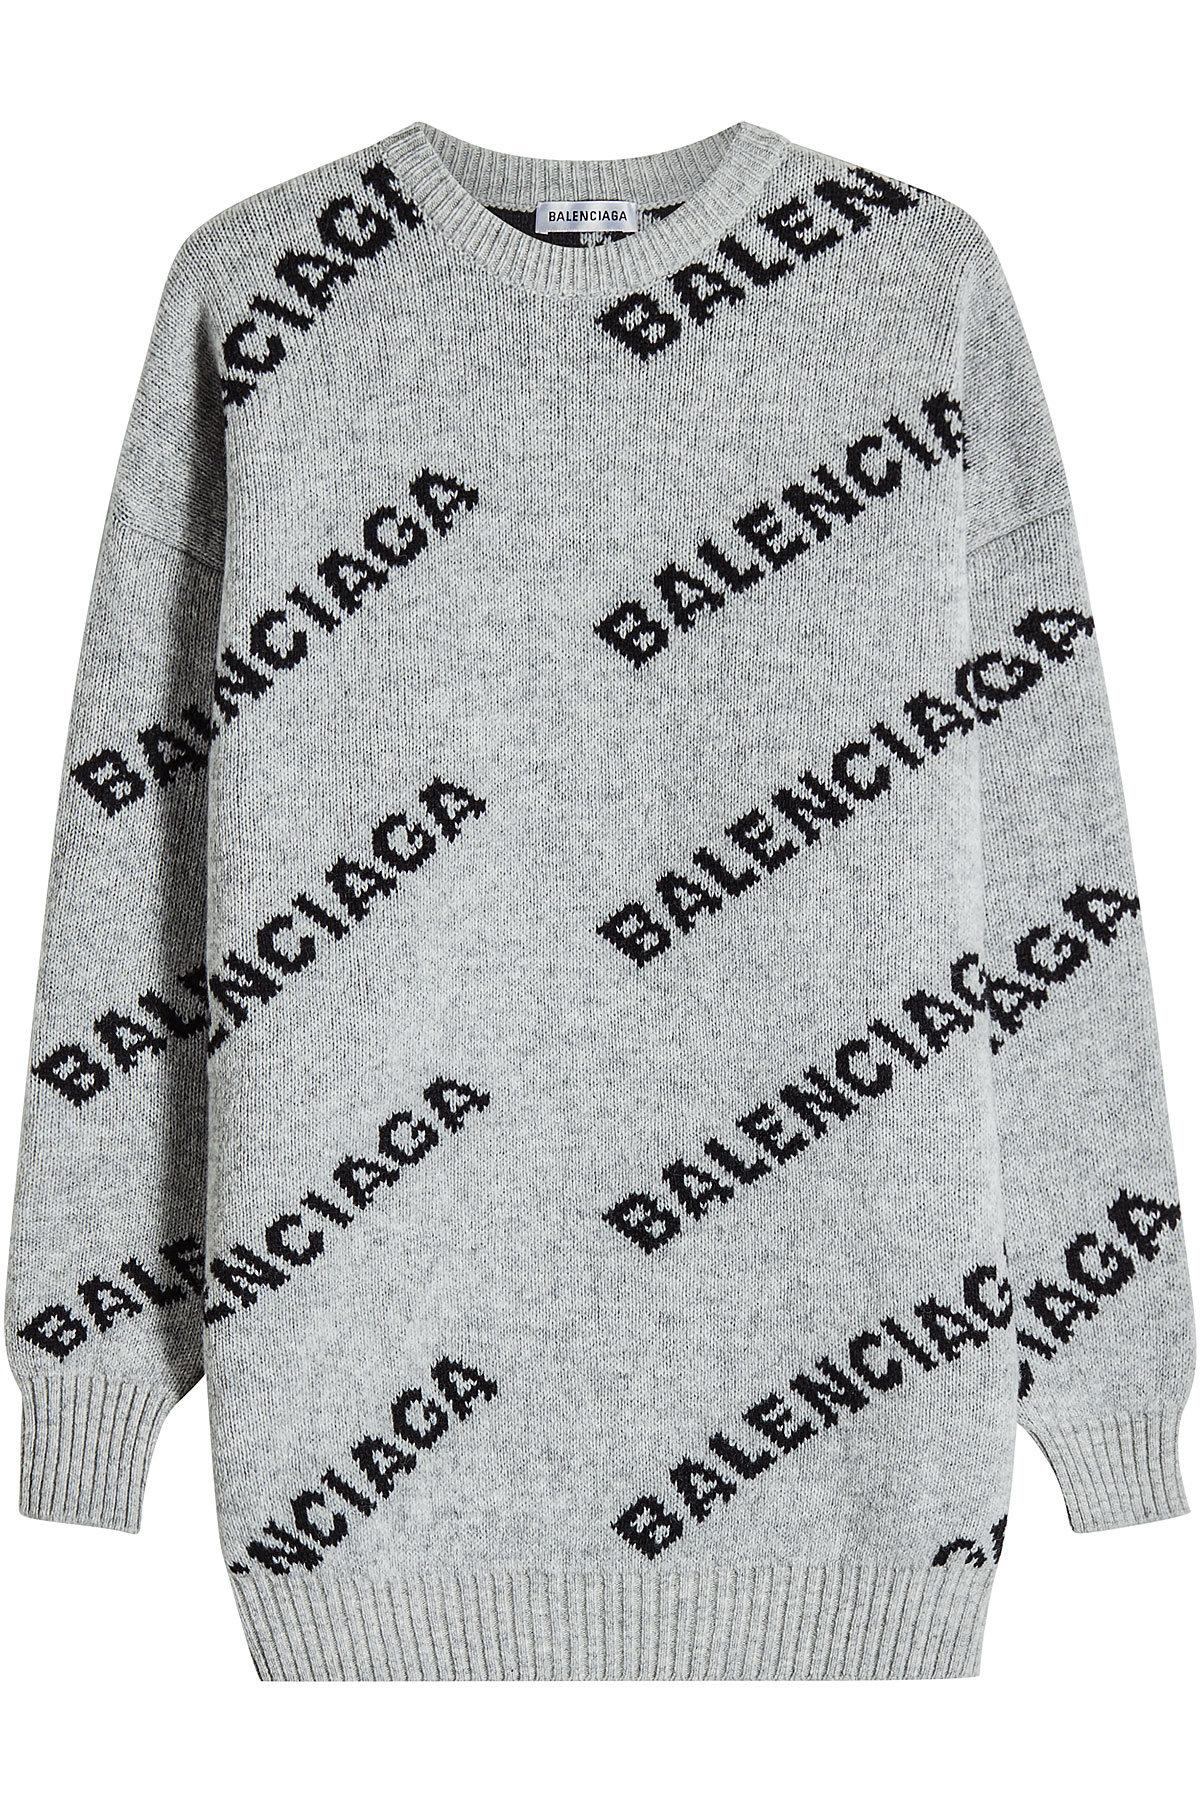 balenciaga sweater grey